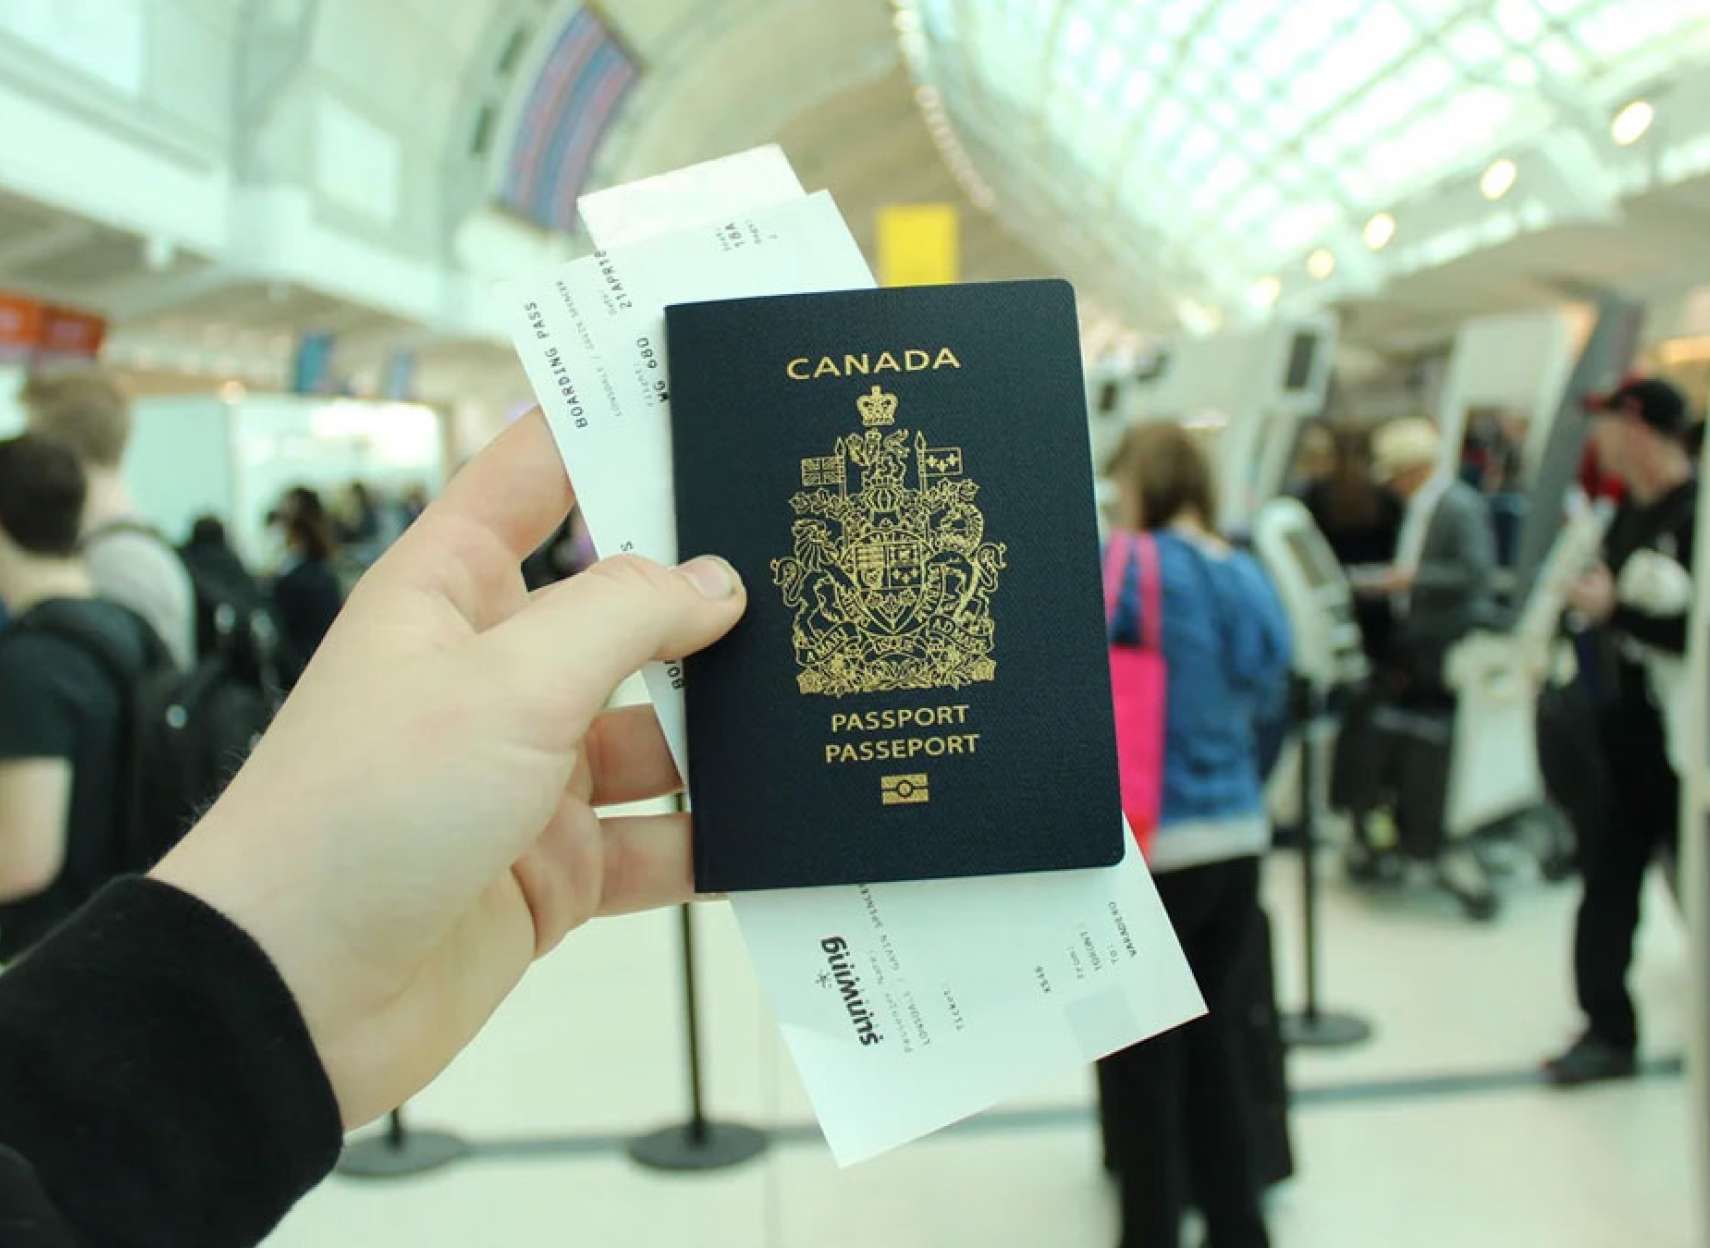 خبر-کانادا-قوانین-مسافرت-و-پاسپورت-کانادا-از-امروز-دوباره-عوض-شدند